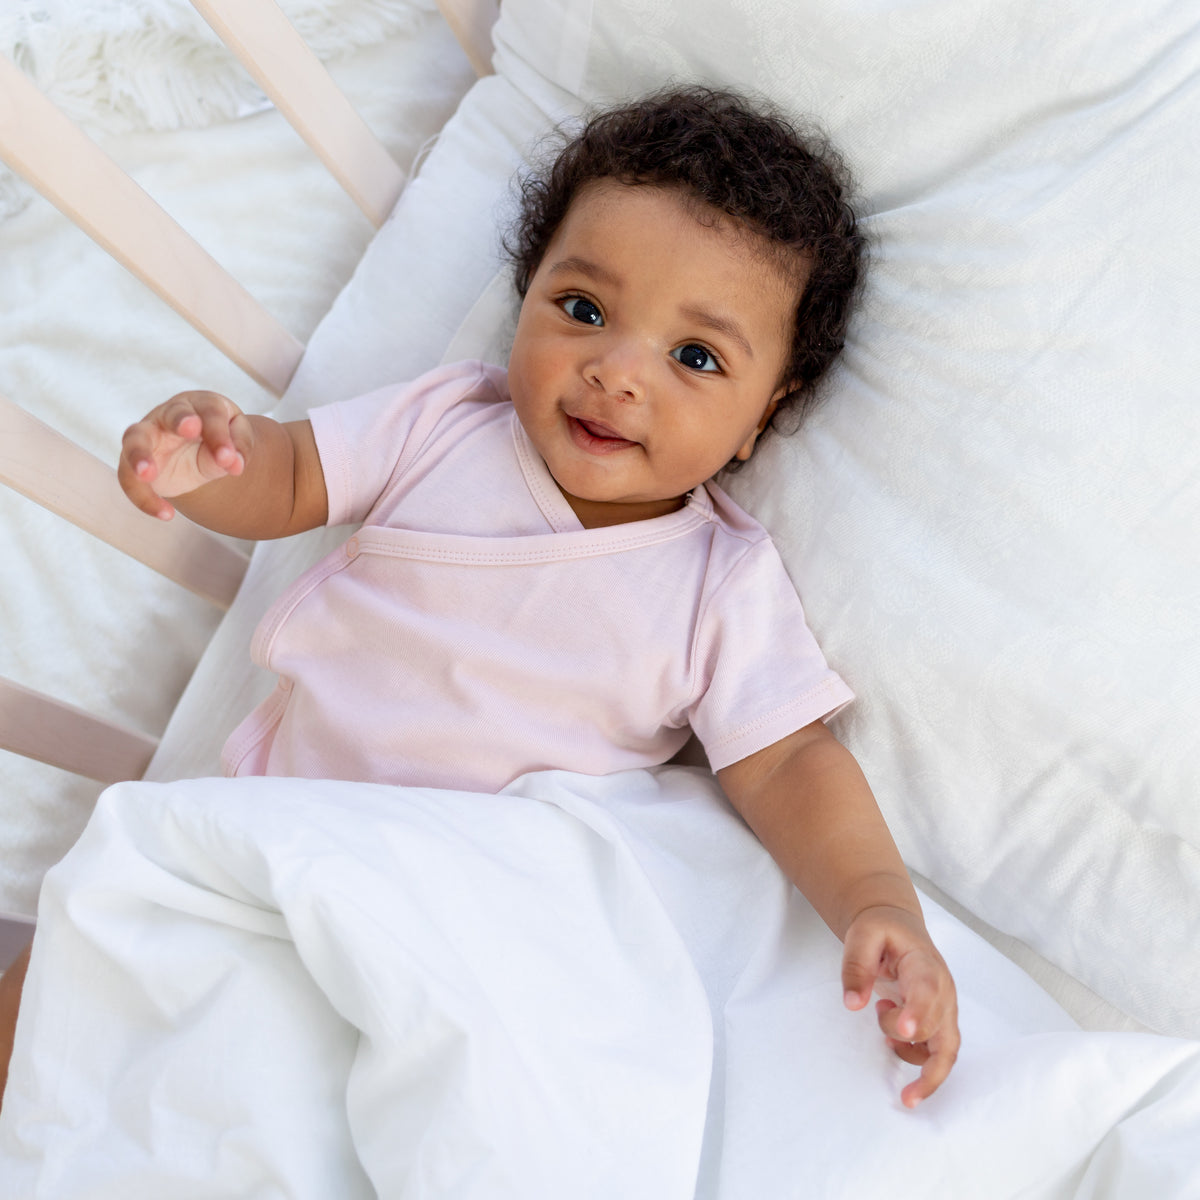 La cuna: una cama segura para tu bebé